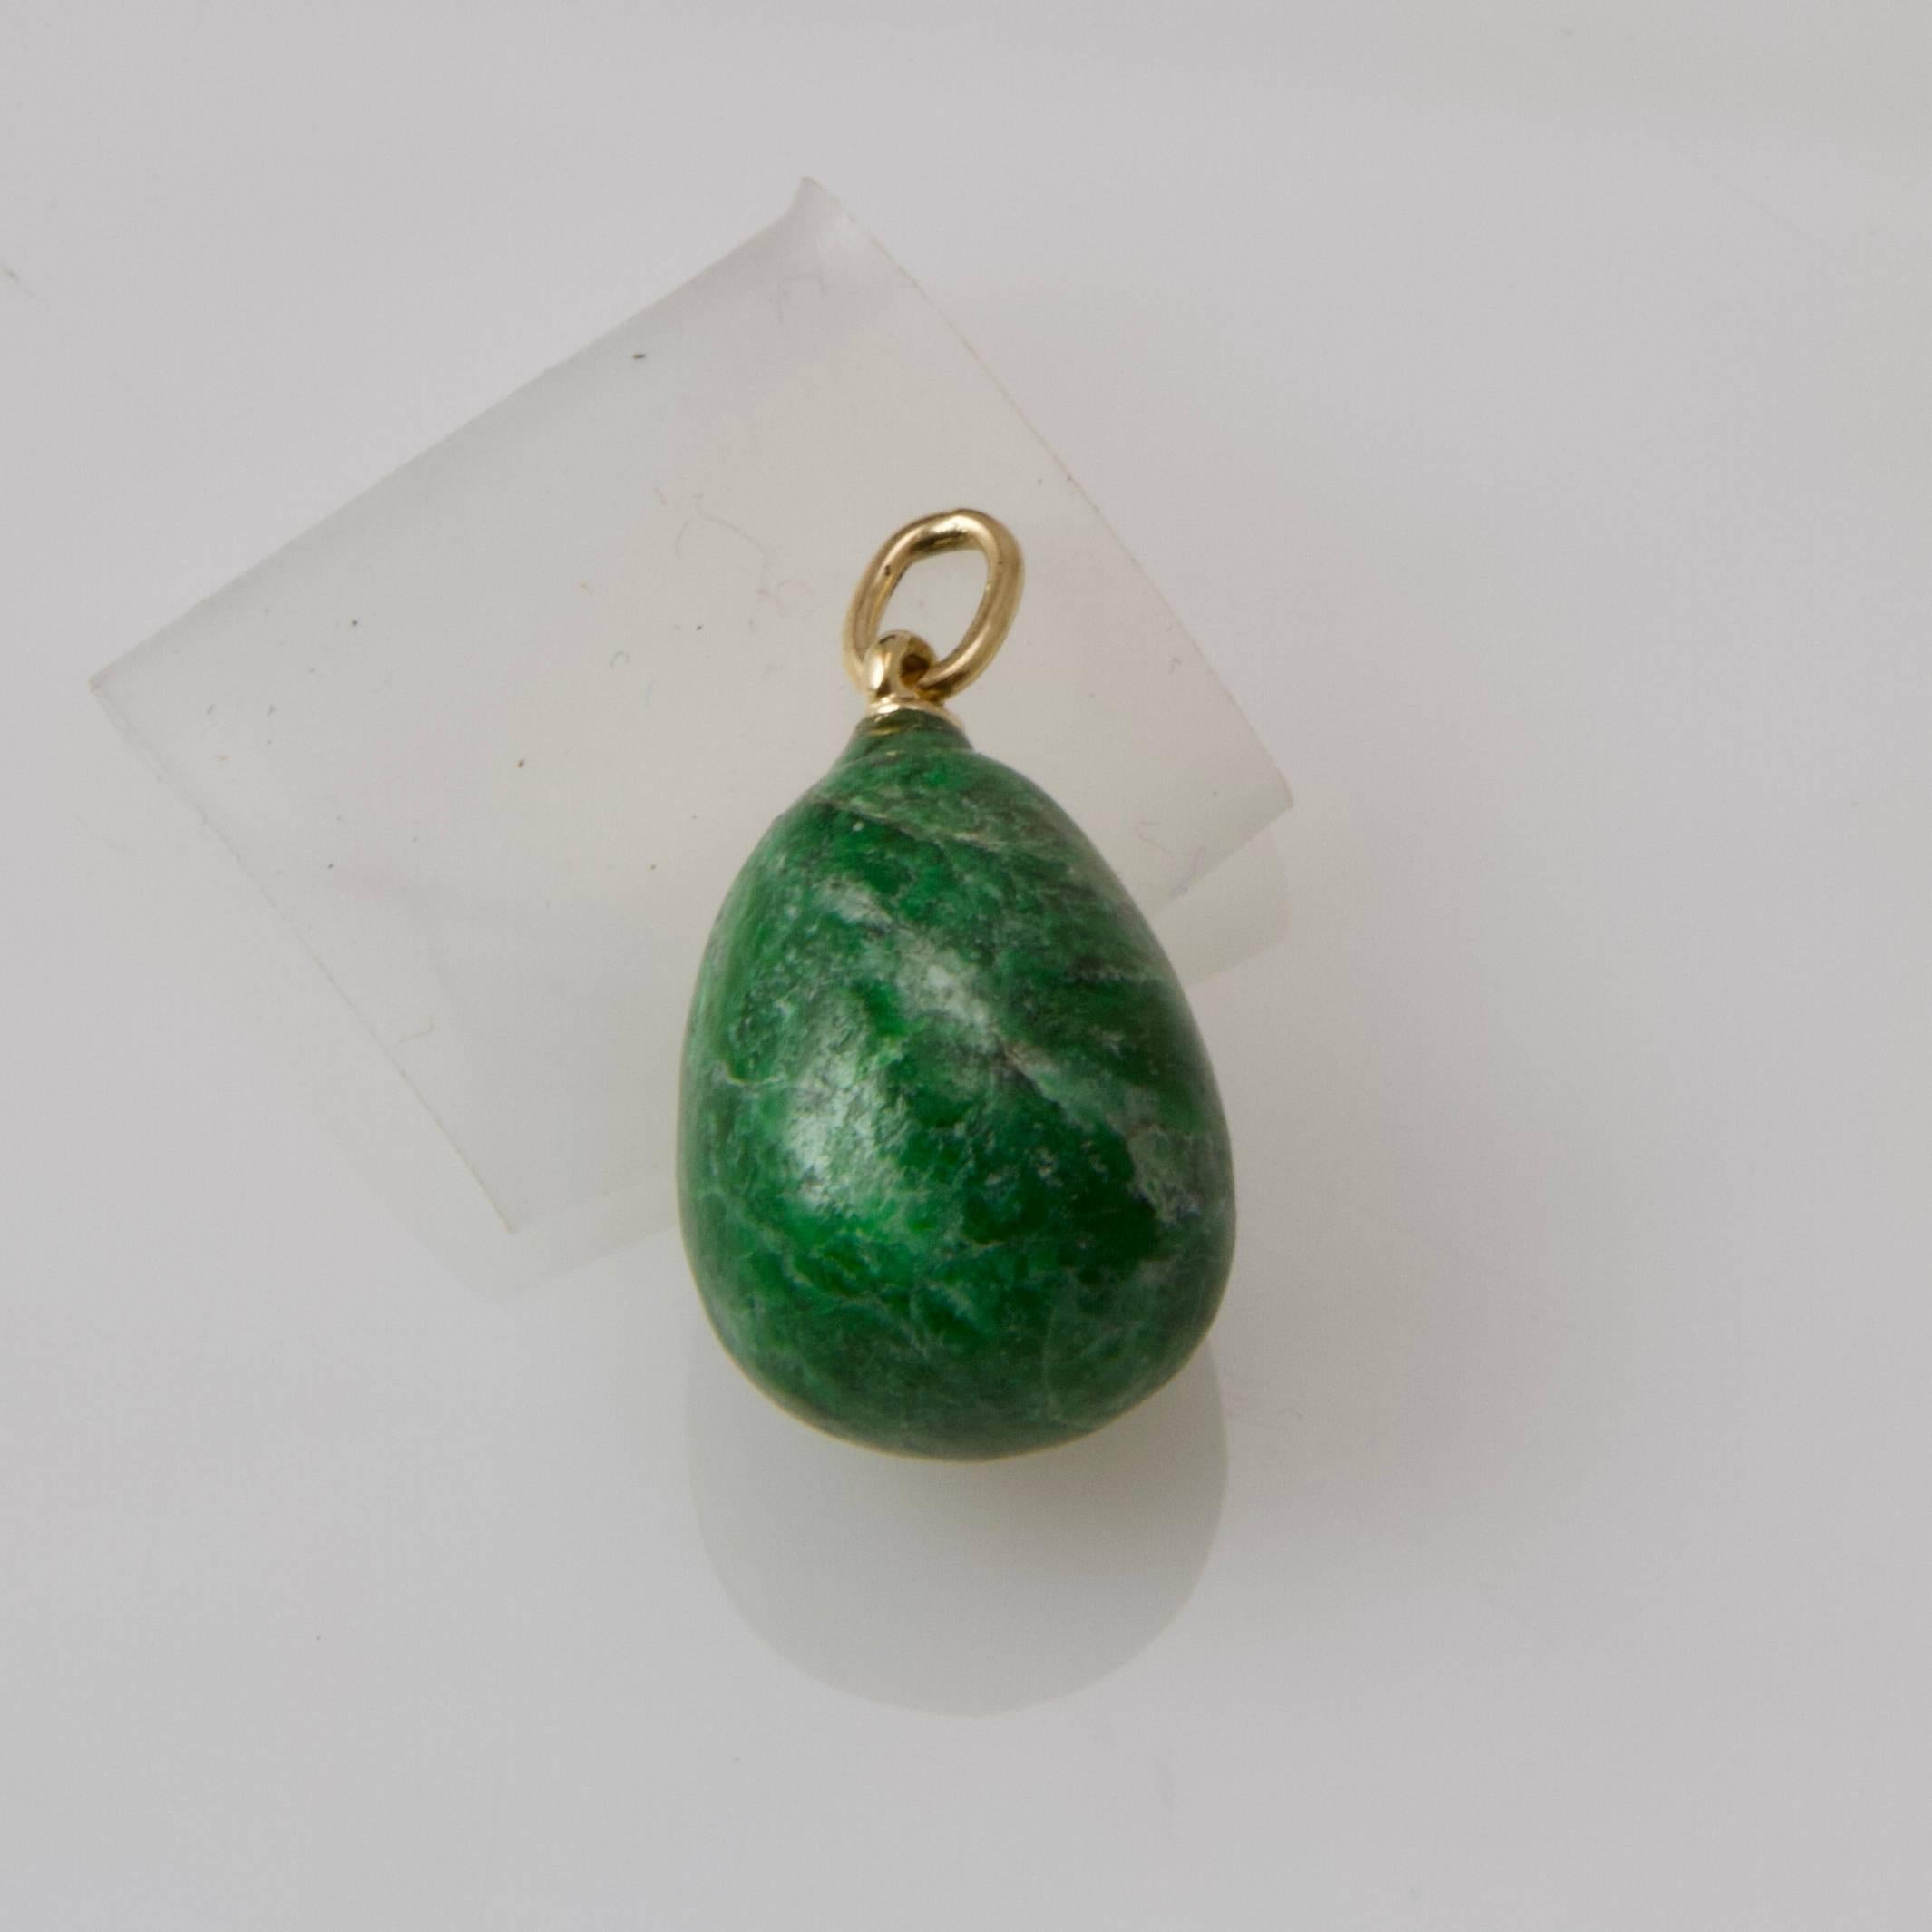 New! Jade nephrite egg mounting on 18kt gold ring.